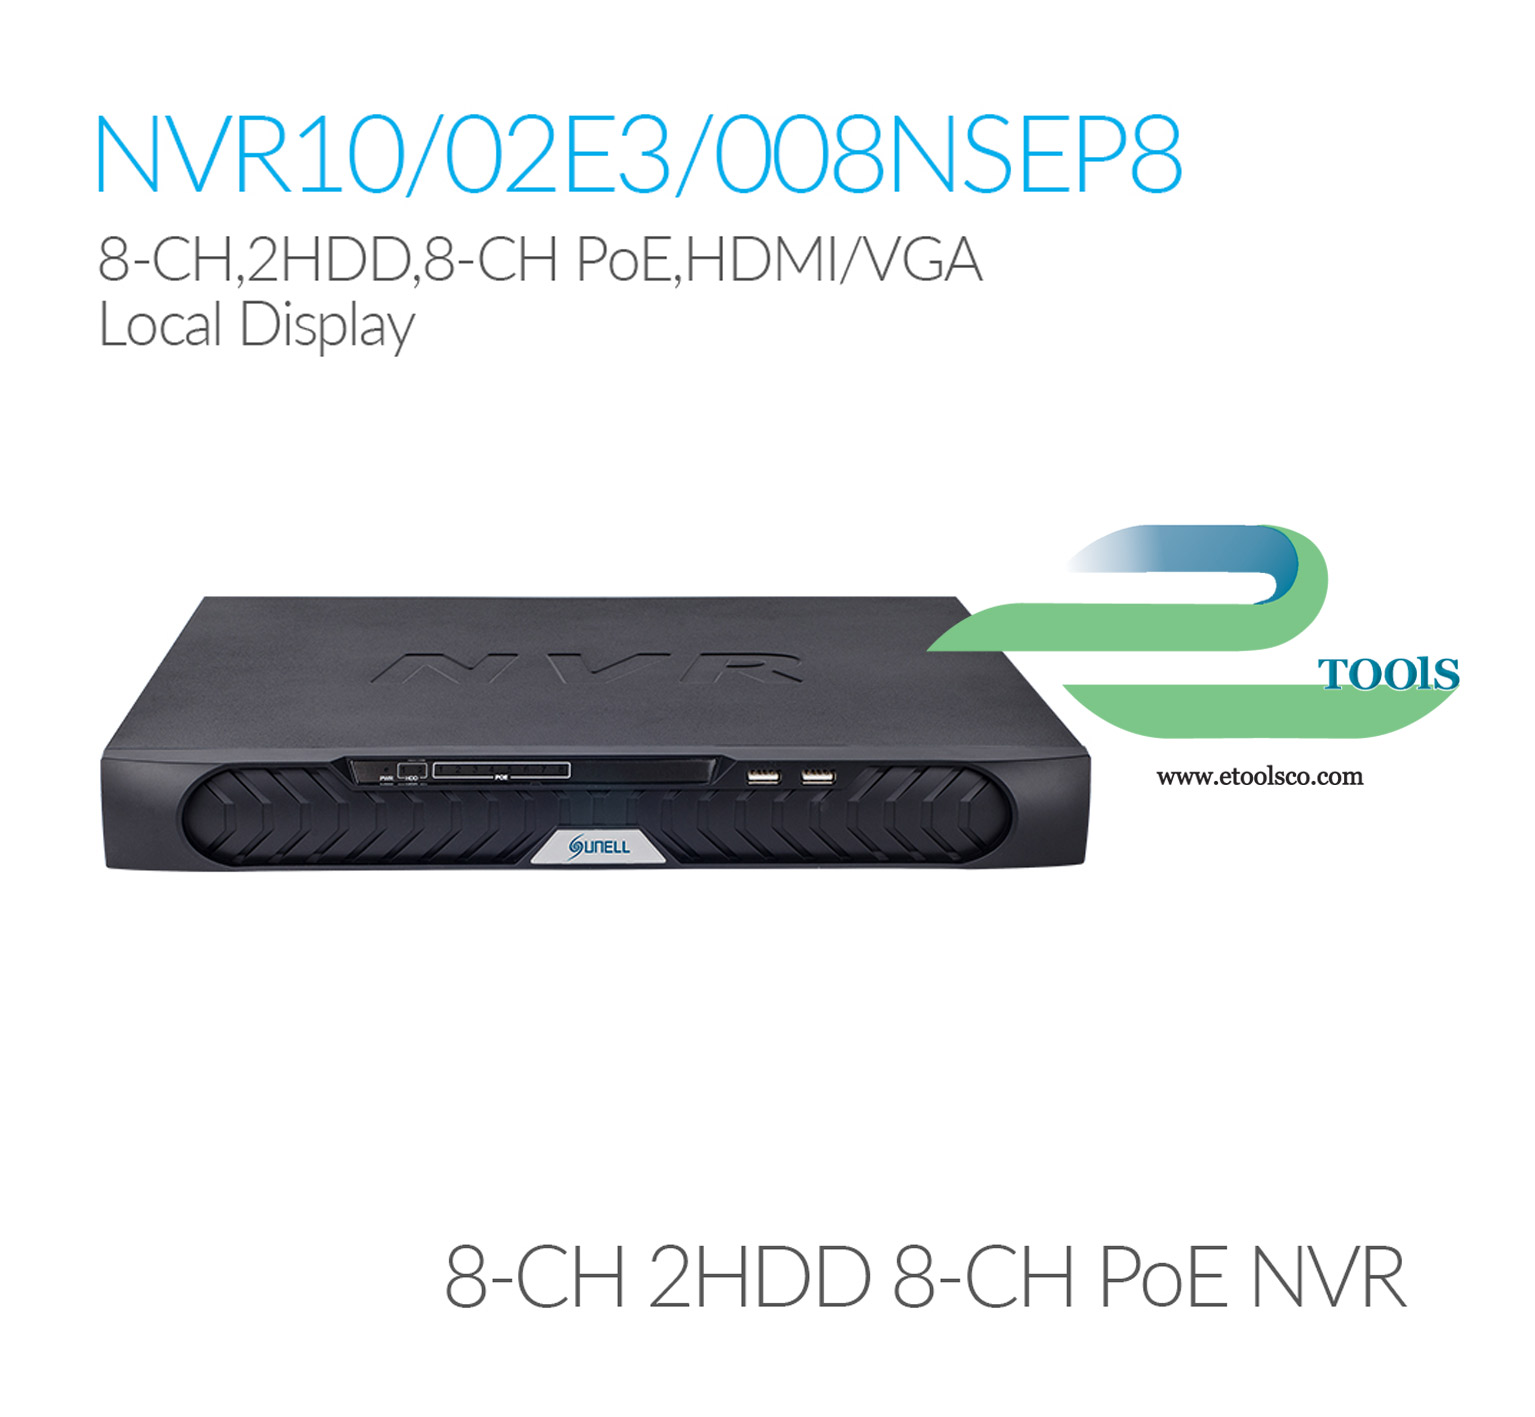 NVR سانل SN NVR10/02E3008NSEP8E